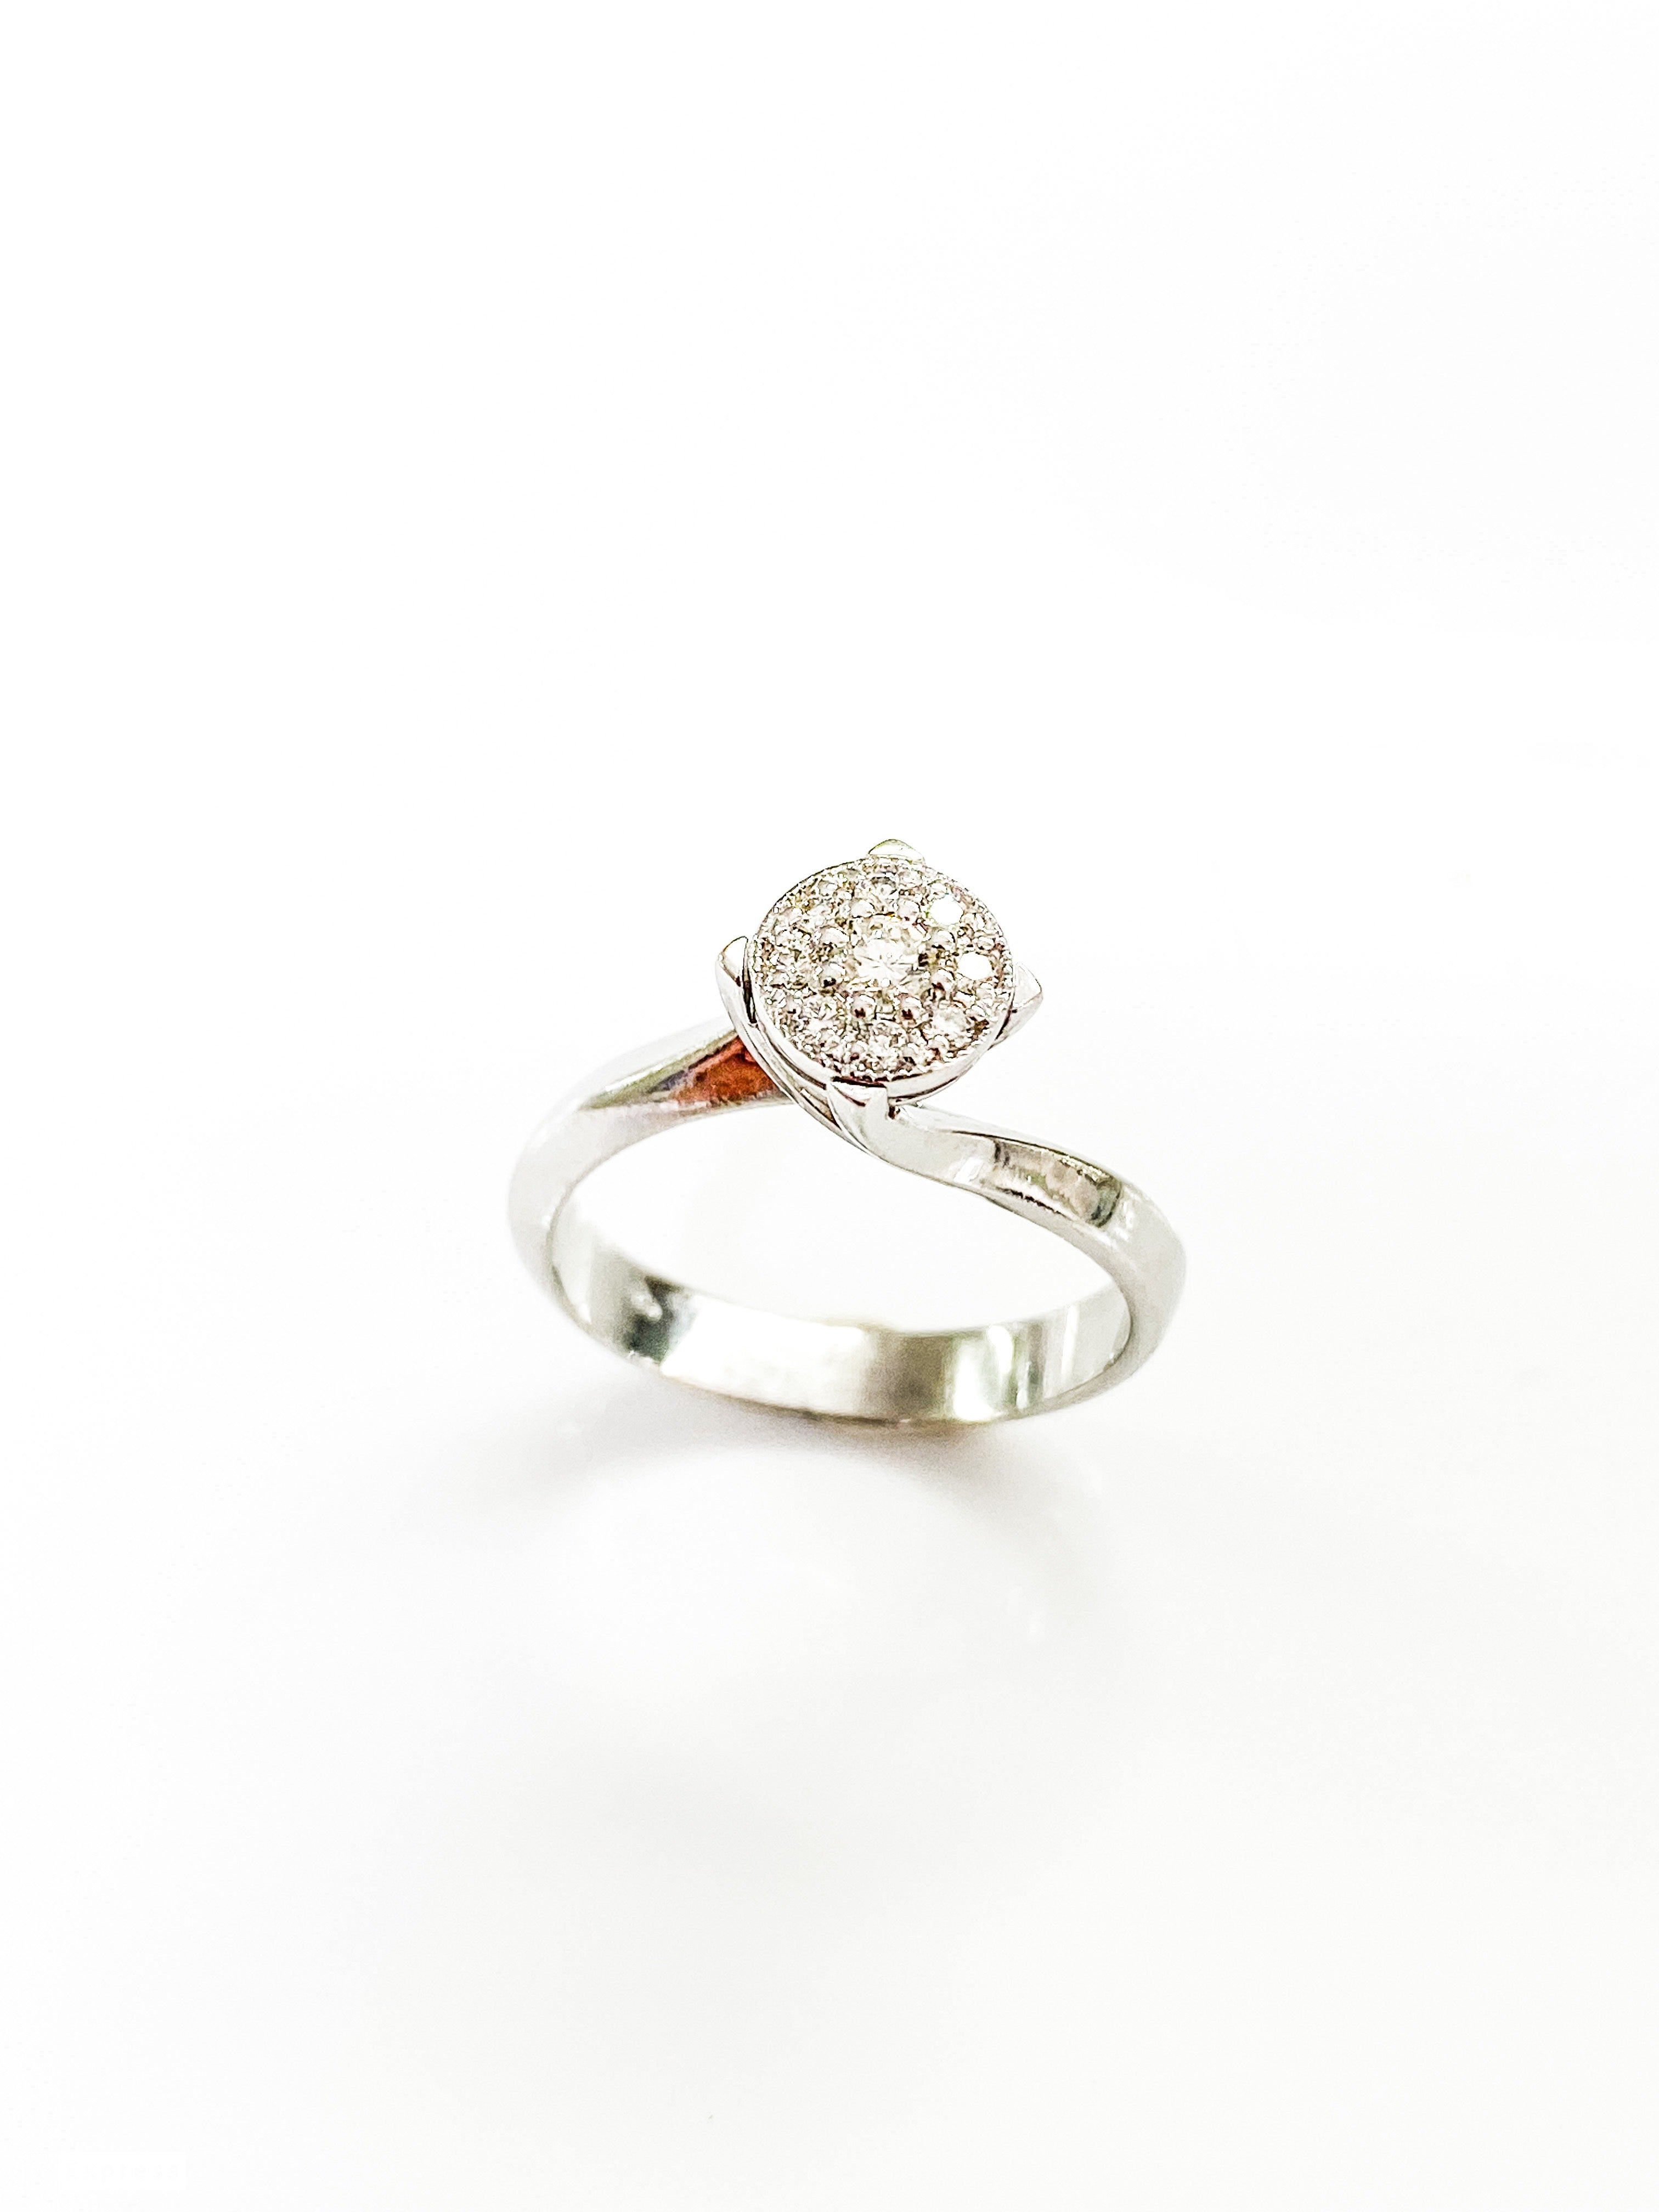 טבעת זהב 14 קארט  לבן עם עיגול יהלומים